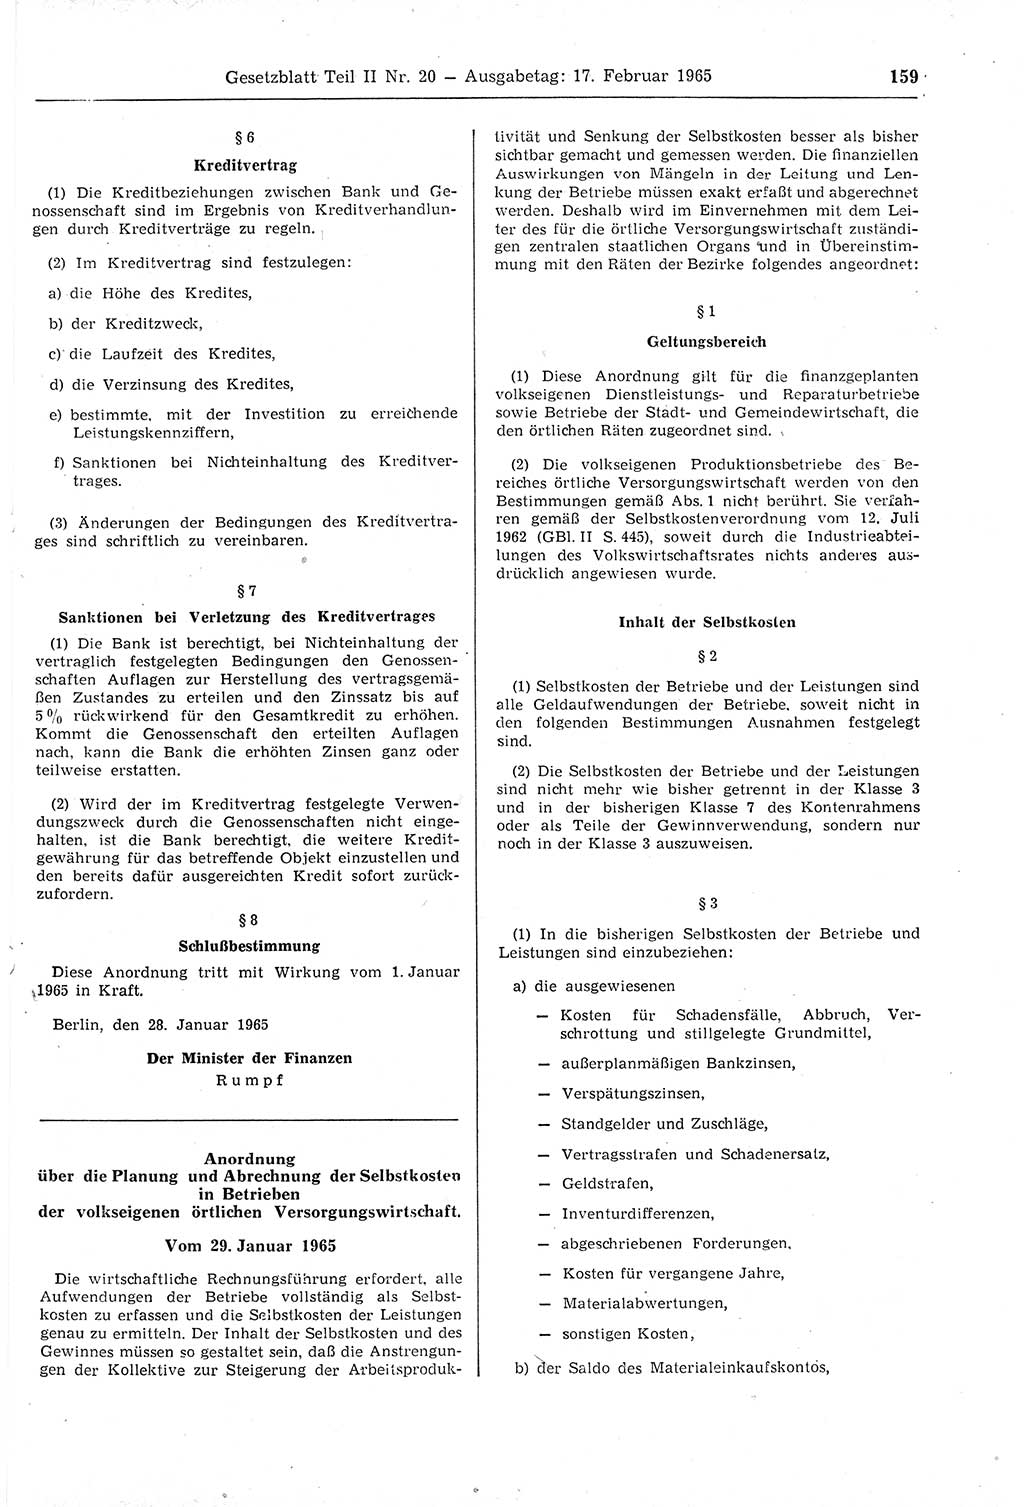 Gesetzblatt (GBl.) der Deutschen Demokratischen Republik (DDR) Teil ⅠⅠ 1965, Seite 159 (GBl. DDR ⅠⅠ 1965, S. 159)